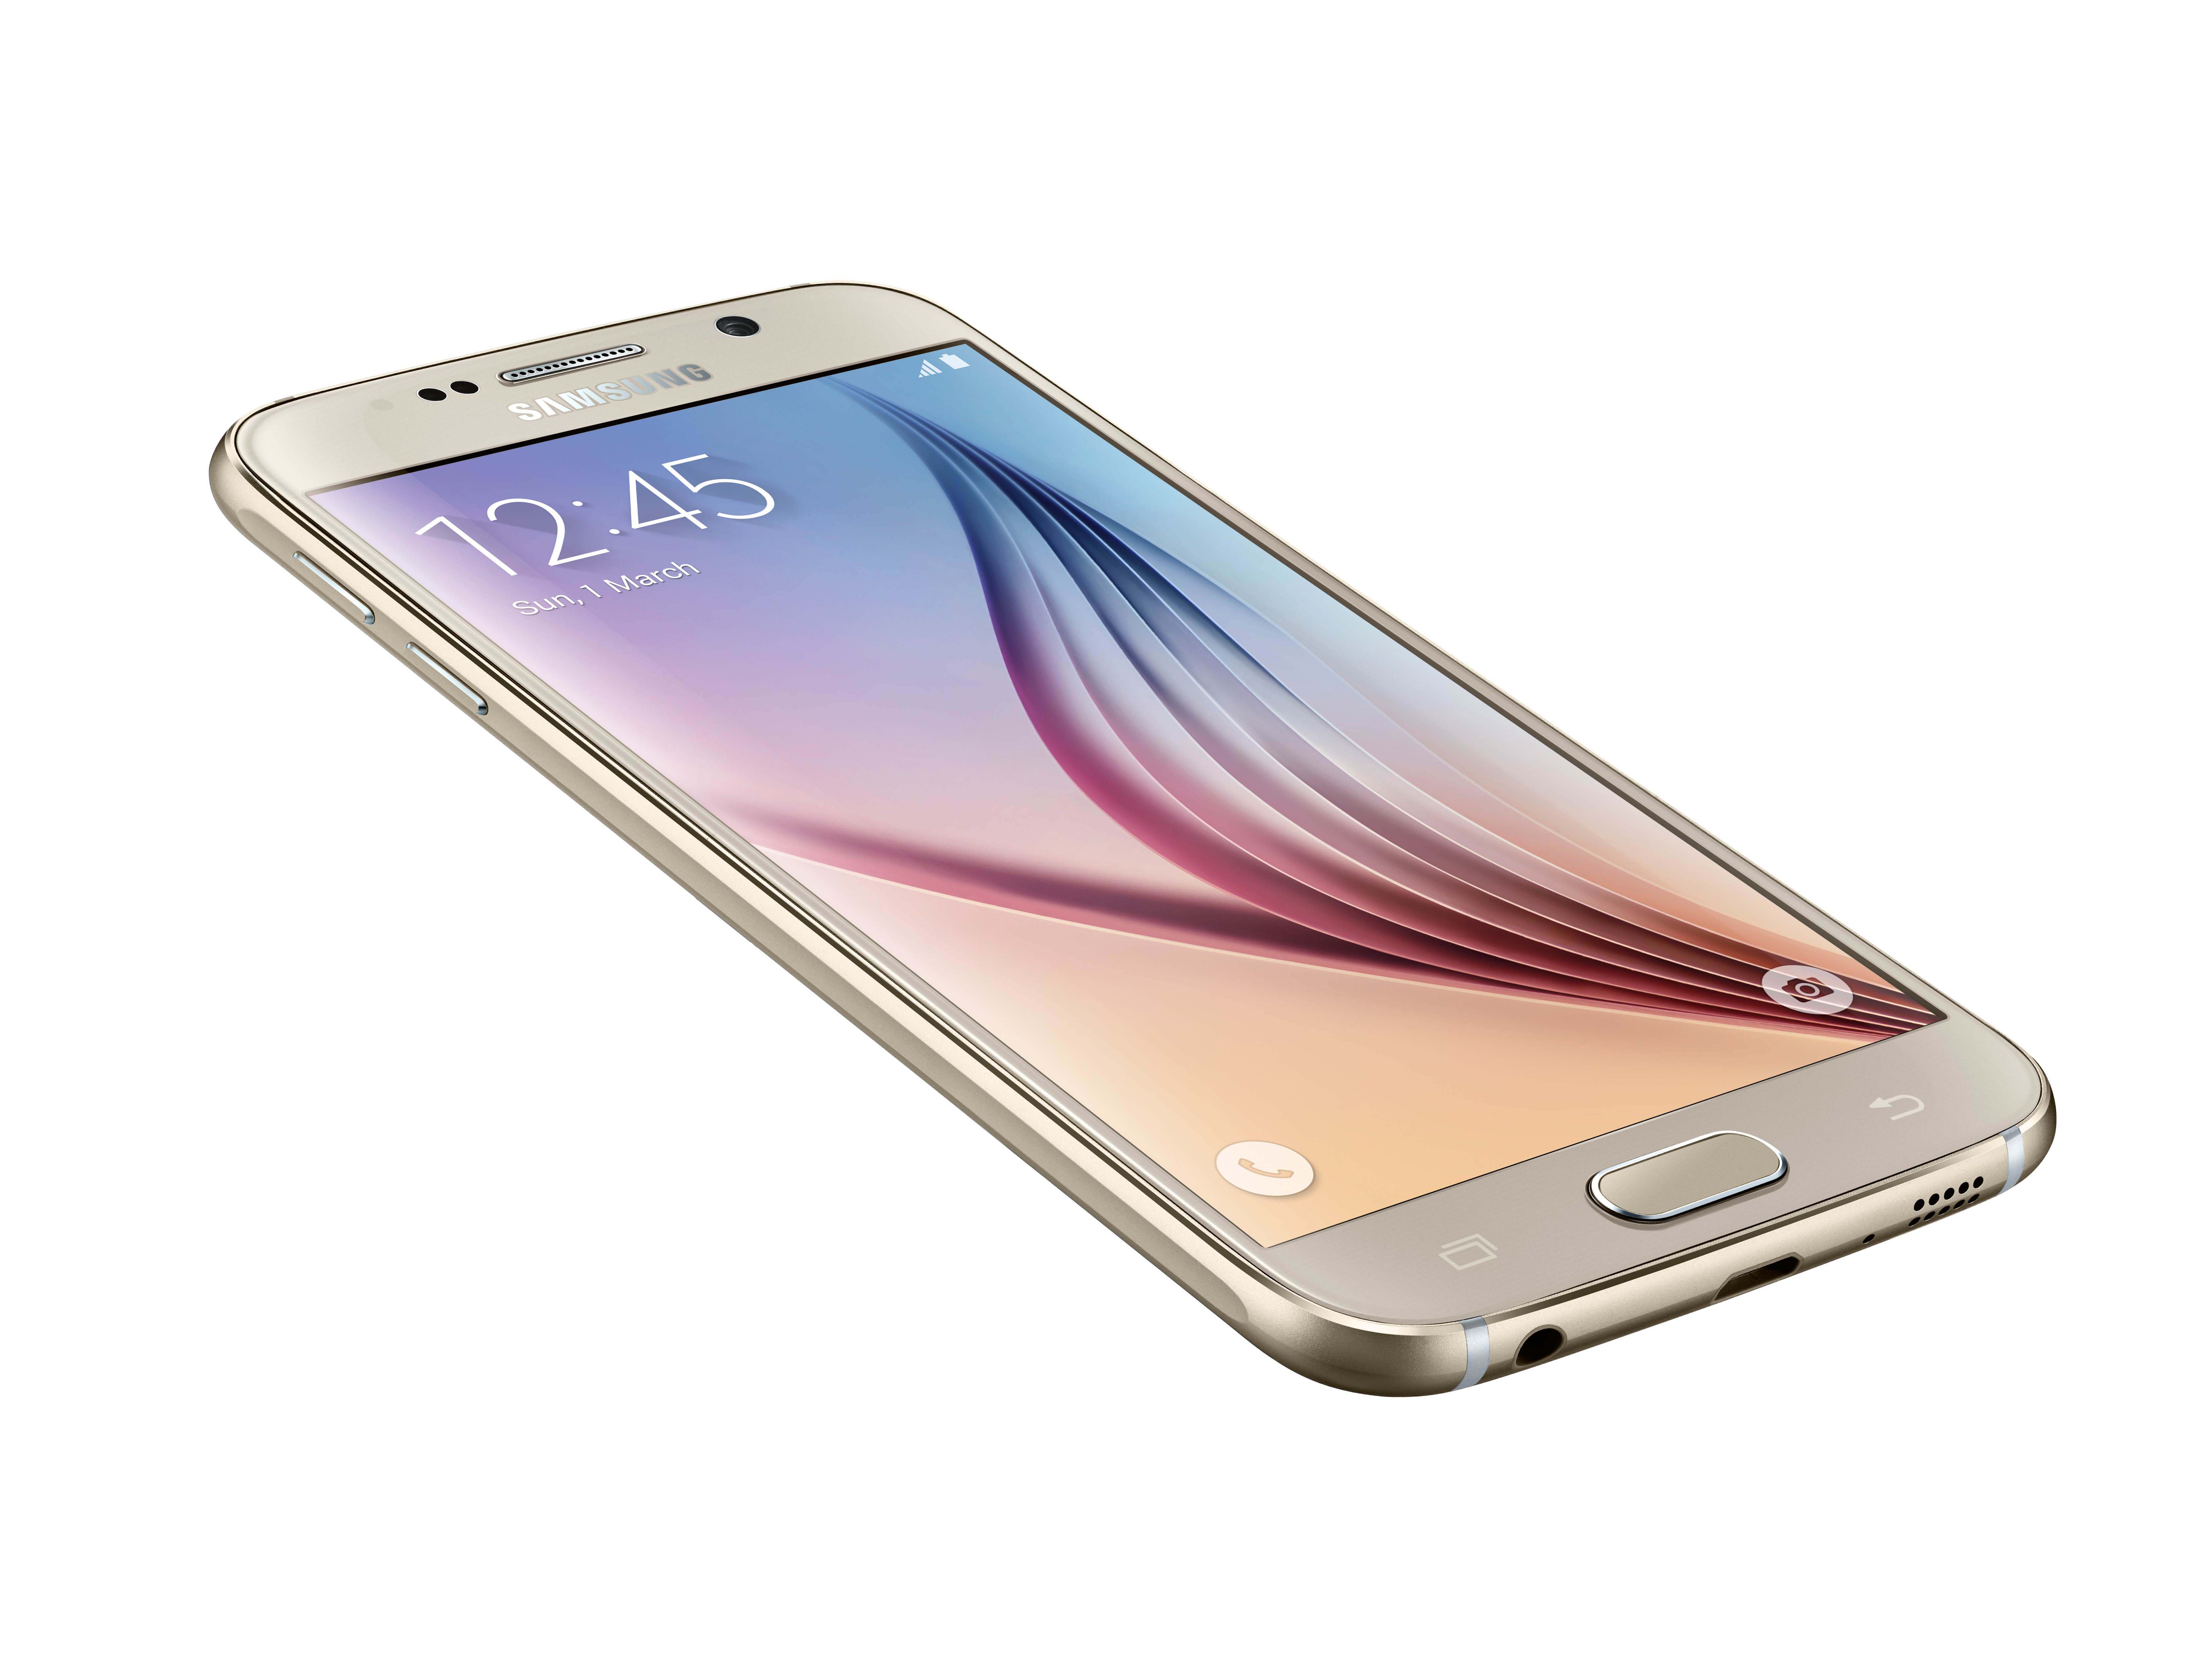 Samsung Galaxy S6 - Notebookcheck.net External Reviews